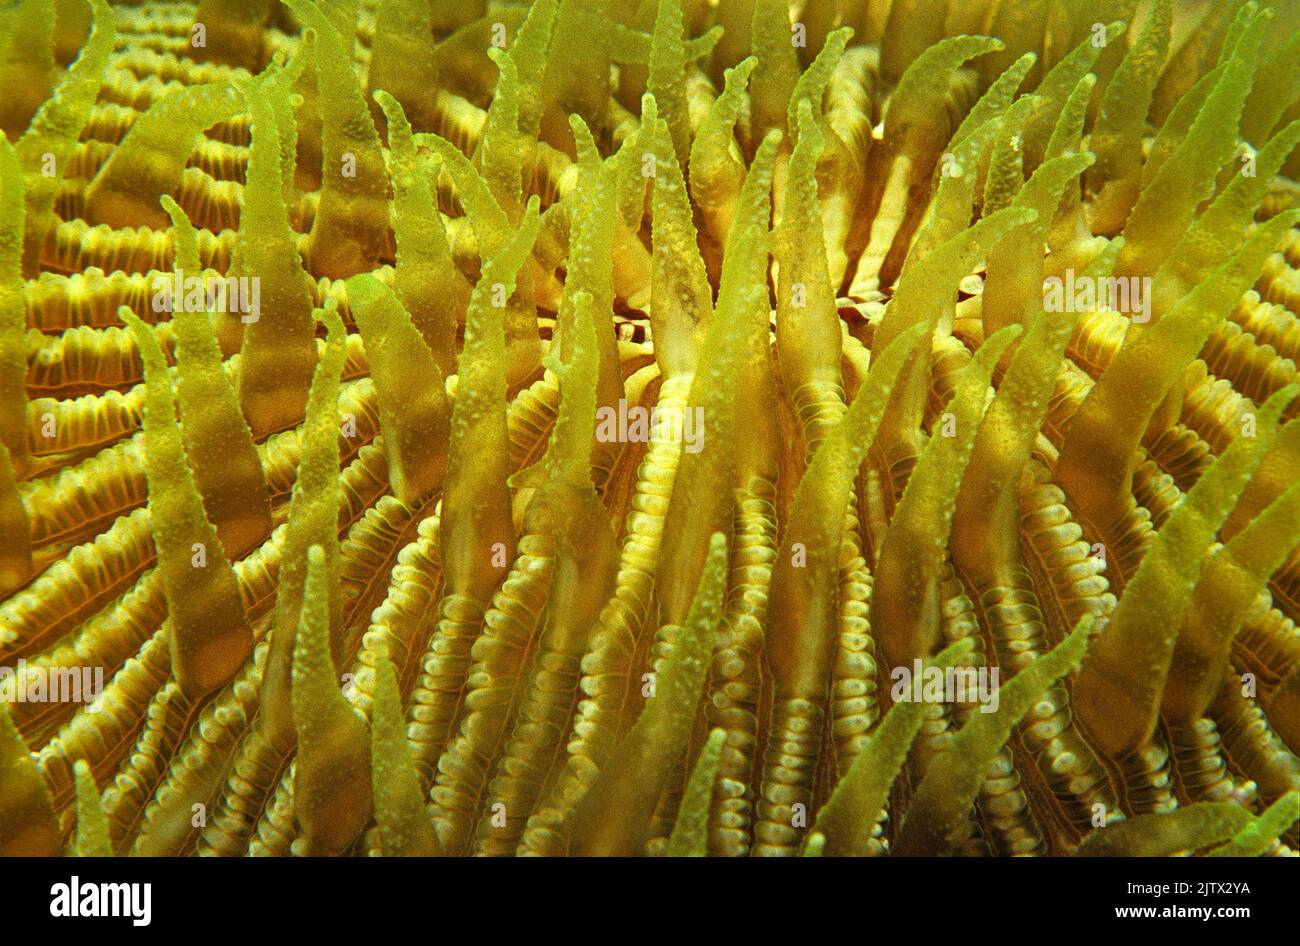 Corail aux champignons avec polypes ouverts (Cycloseris cyclolites), Maldives, océan Indien, Asie Banque D'Images